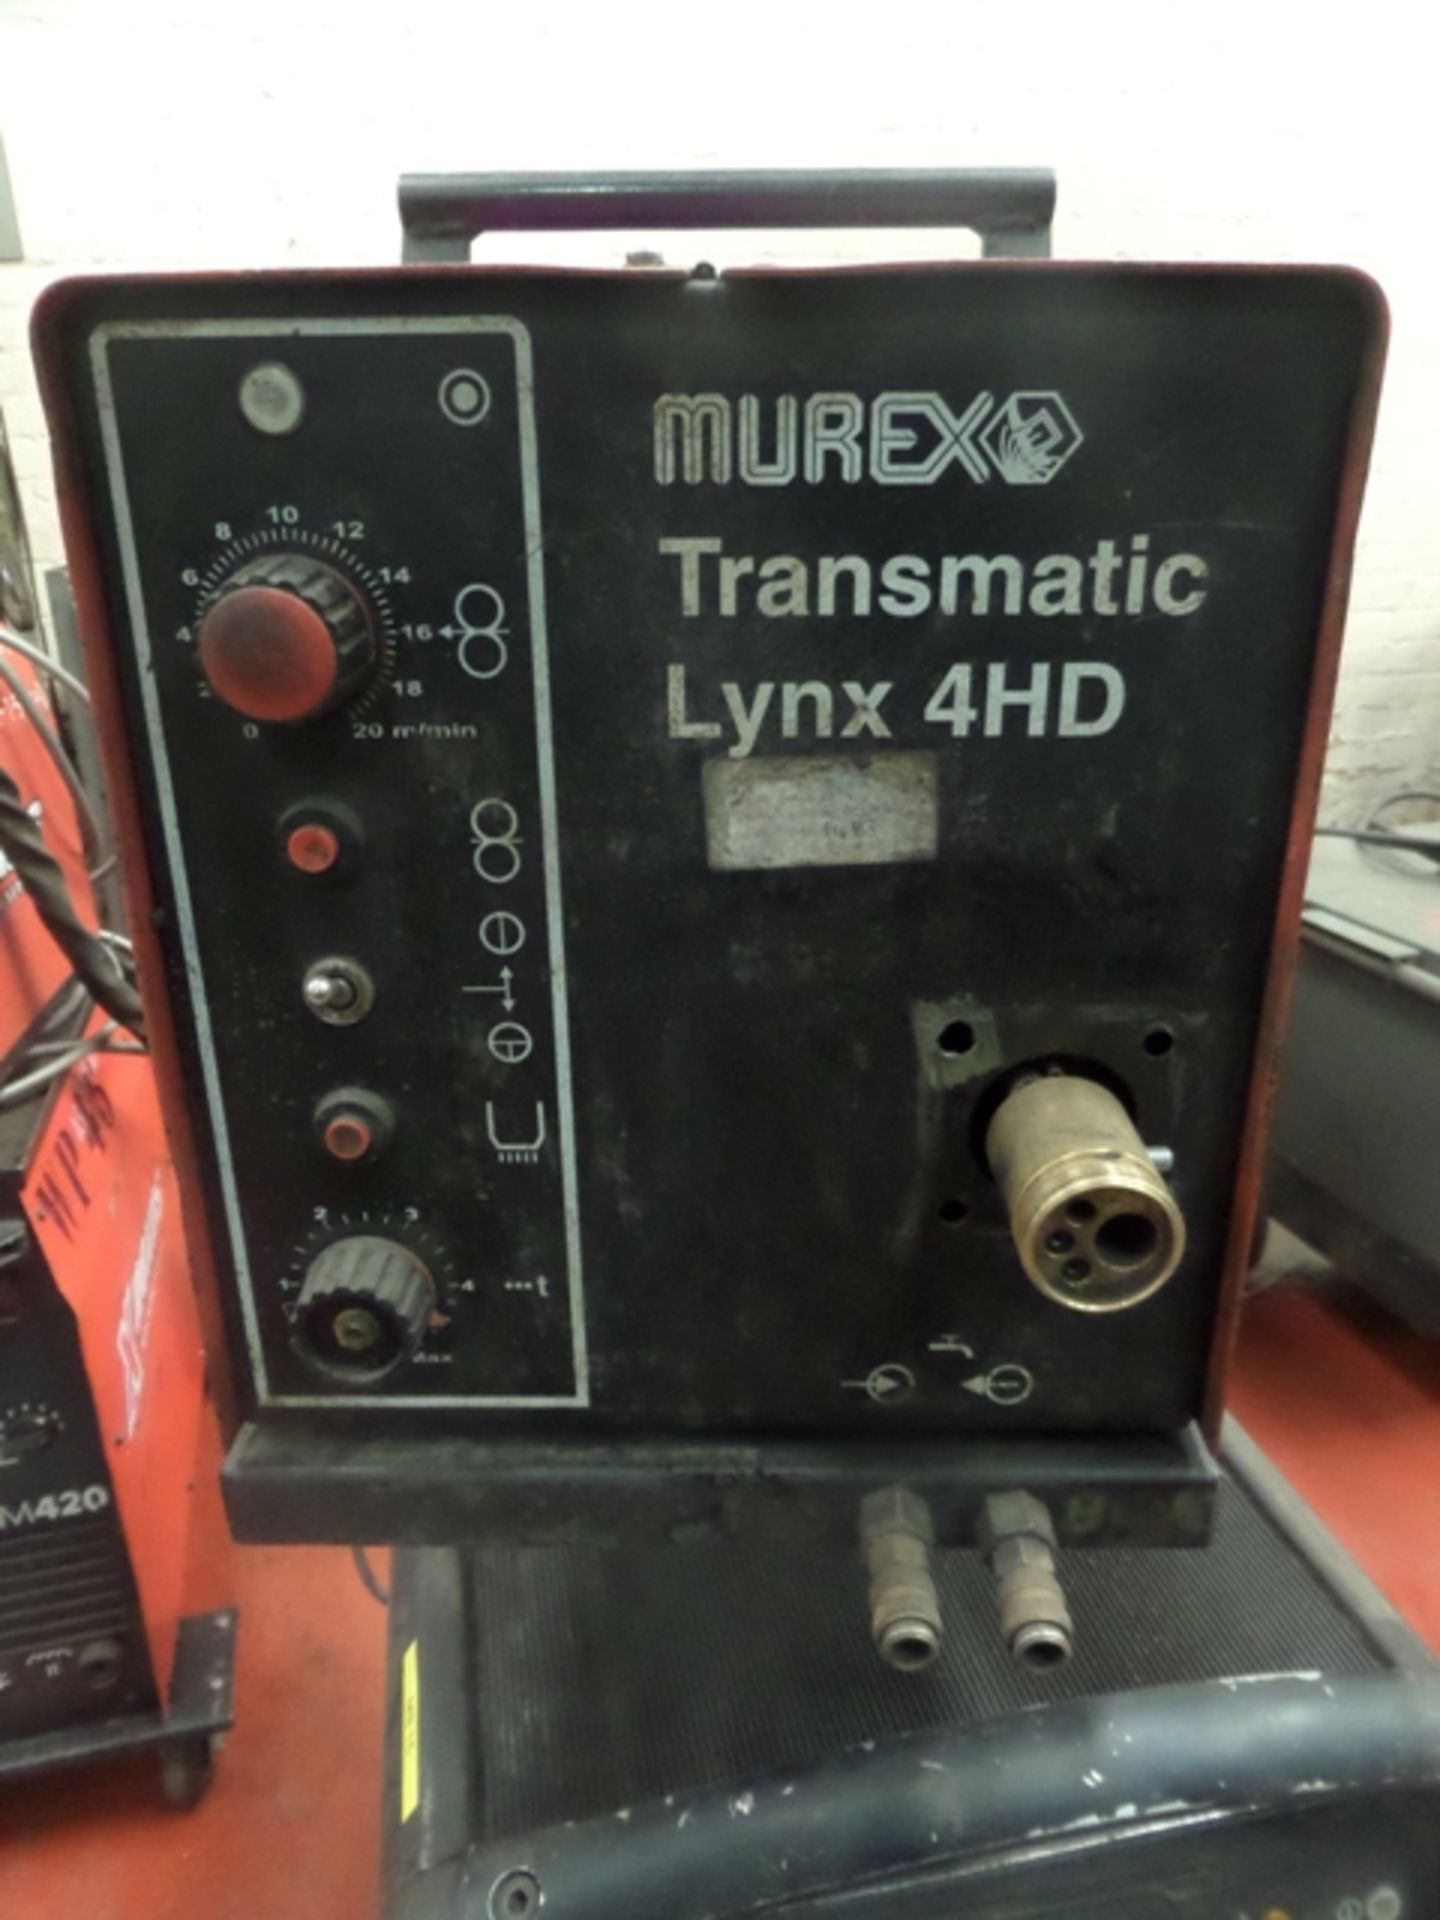 Murex Transmatic Lynx 4HD / Transmig 406 SW - Image 3 of 5